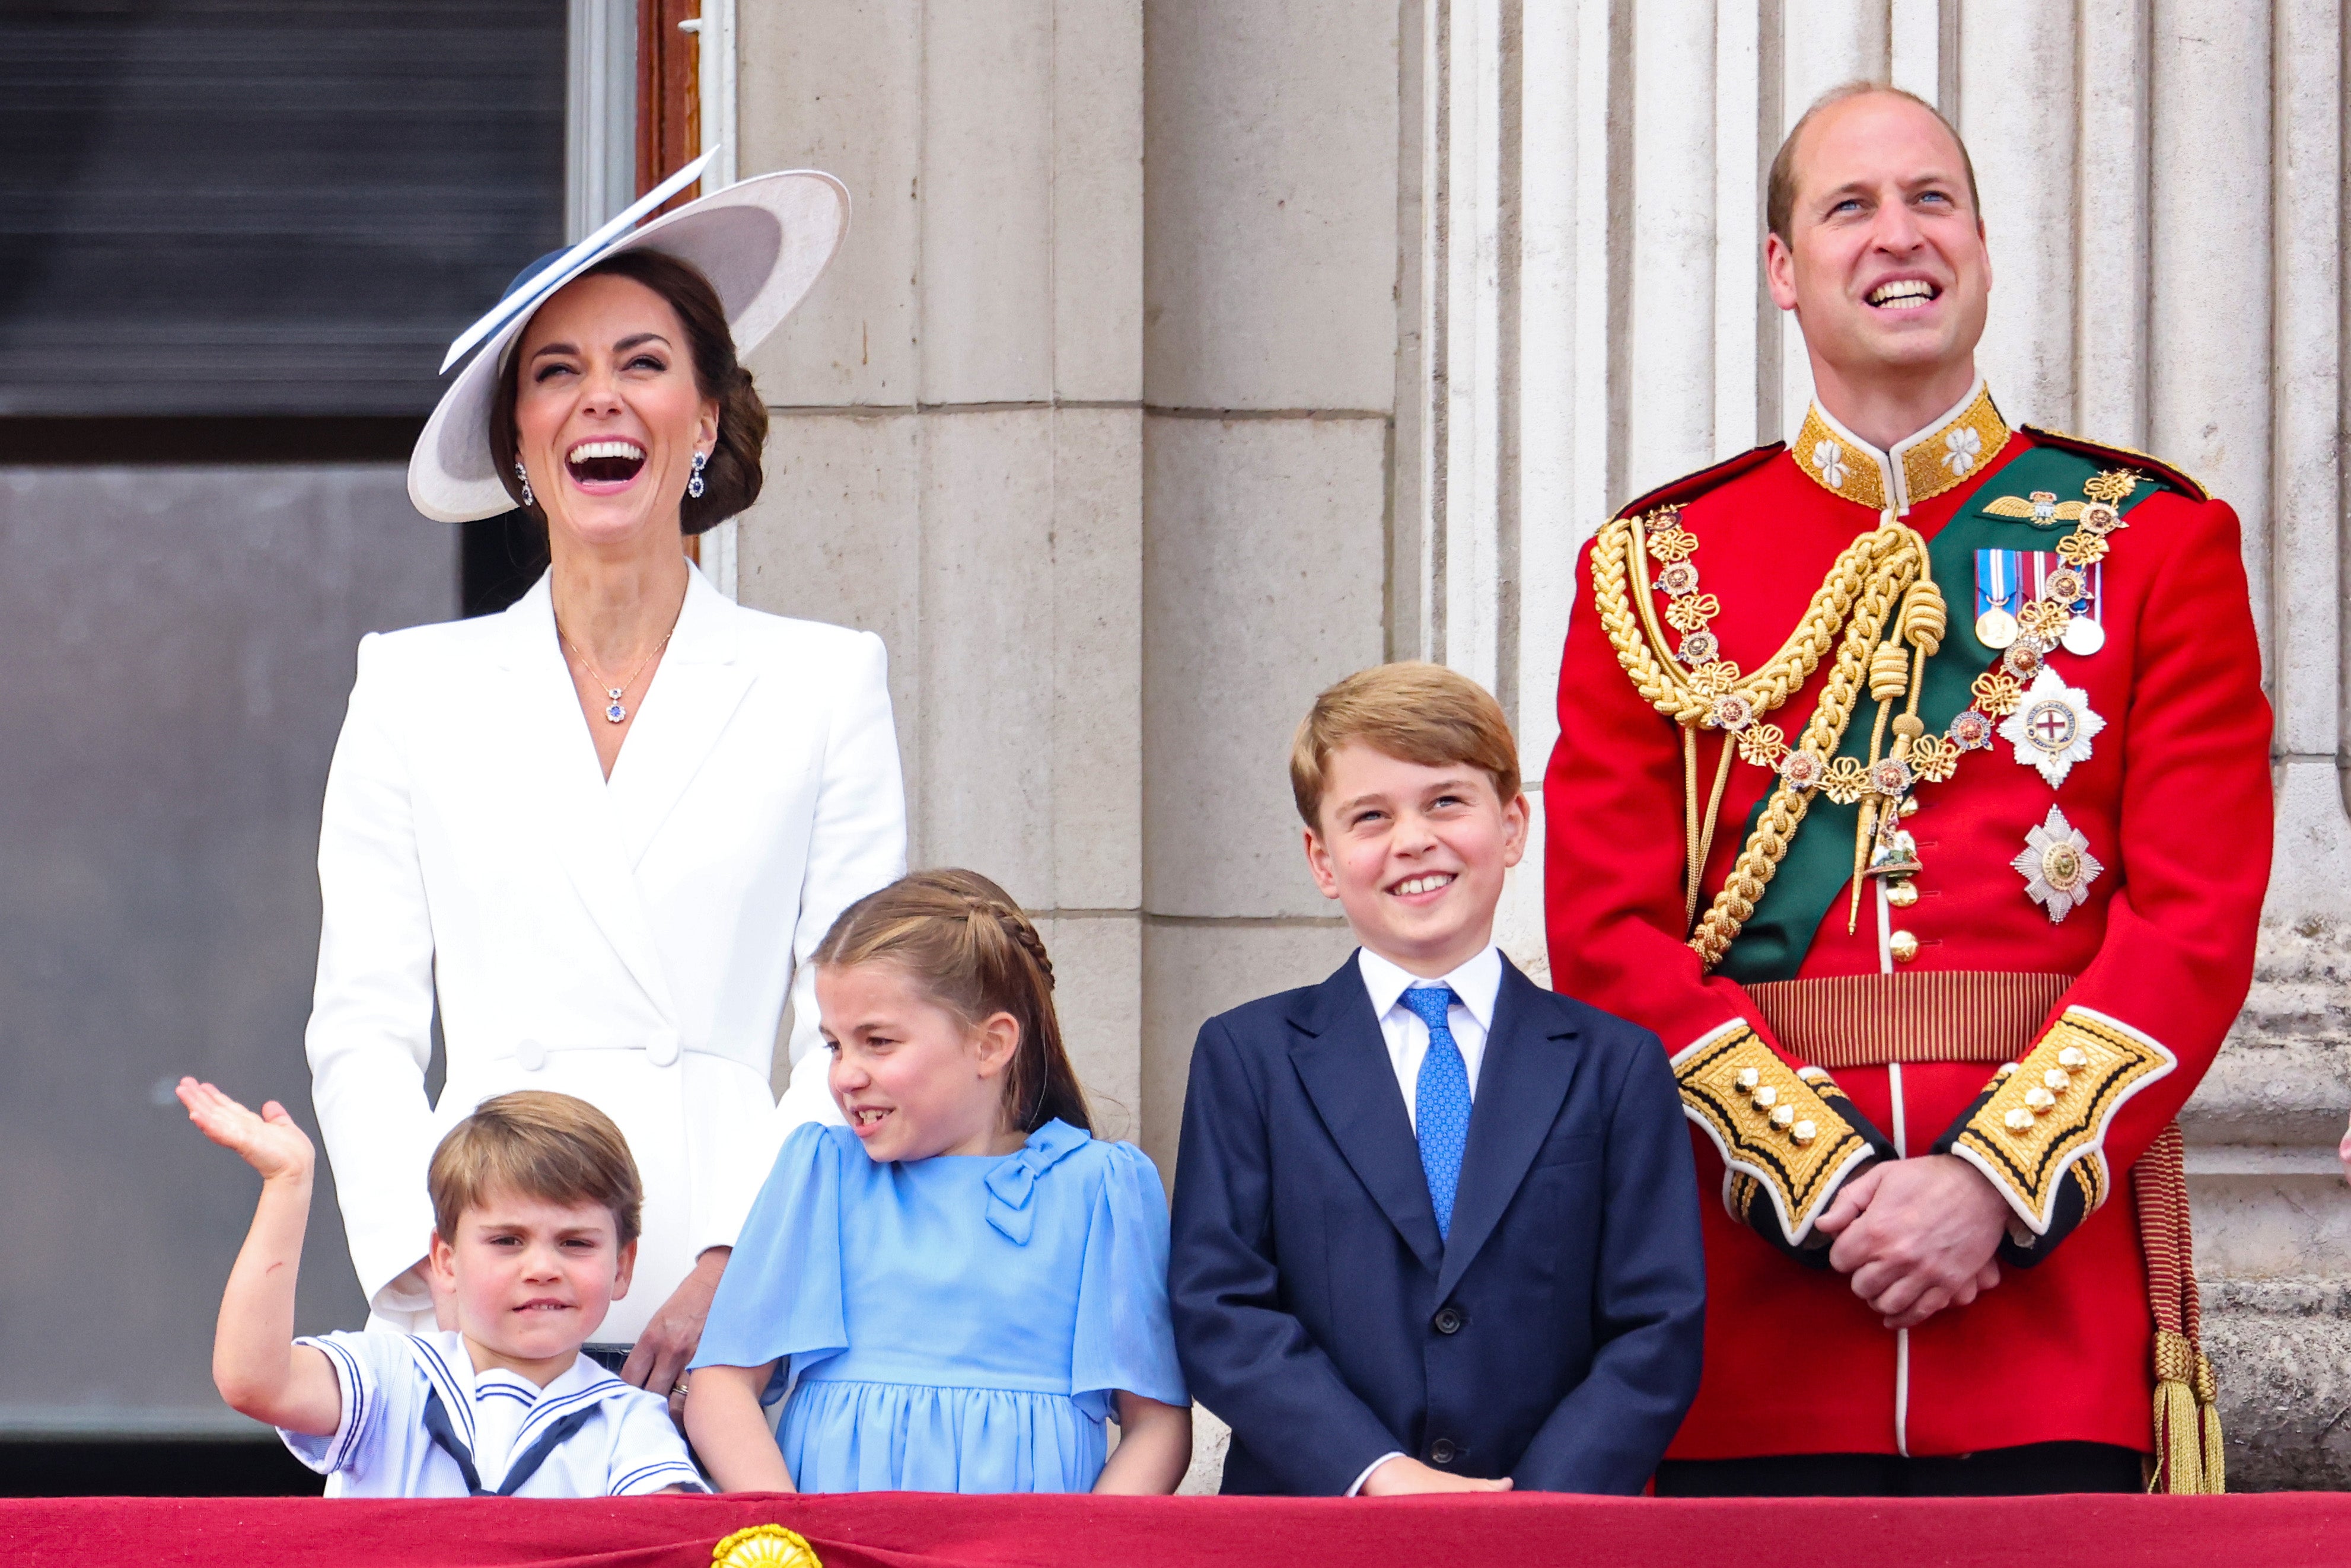 El príncipe William y sus tres hijos George, Charlotte y Louis, son los próximos en la línea de sucesión